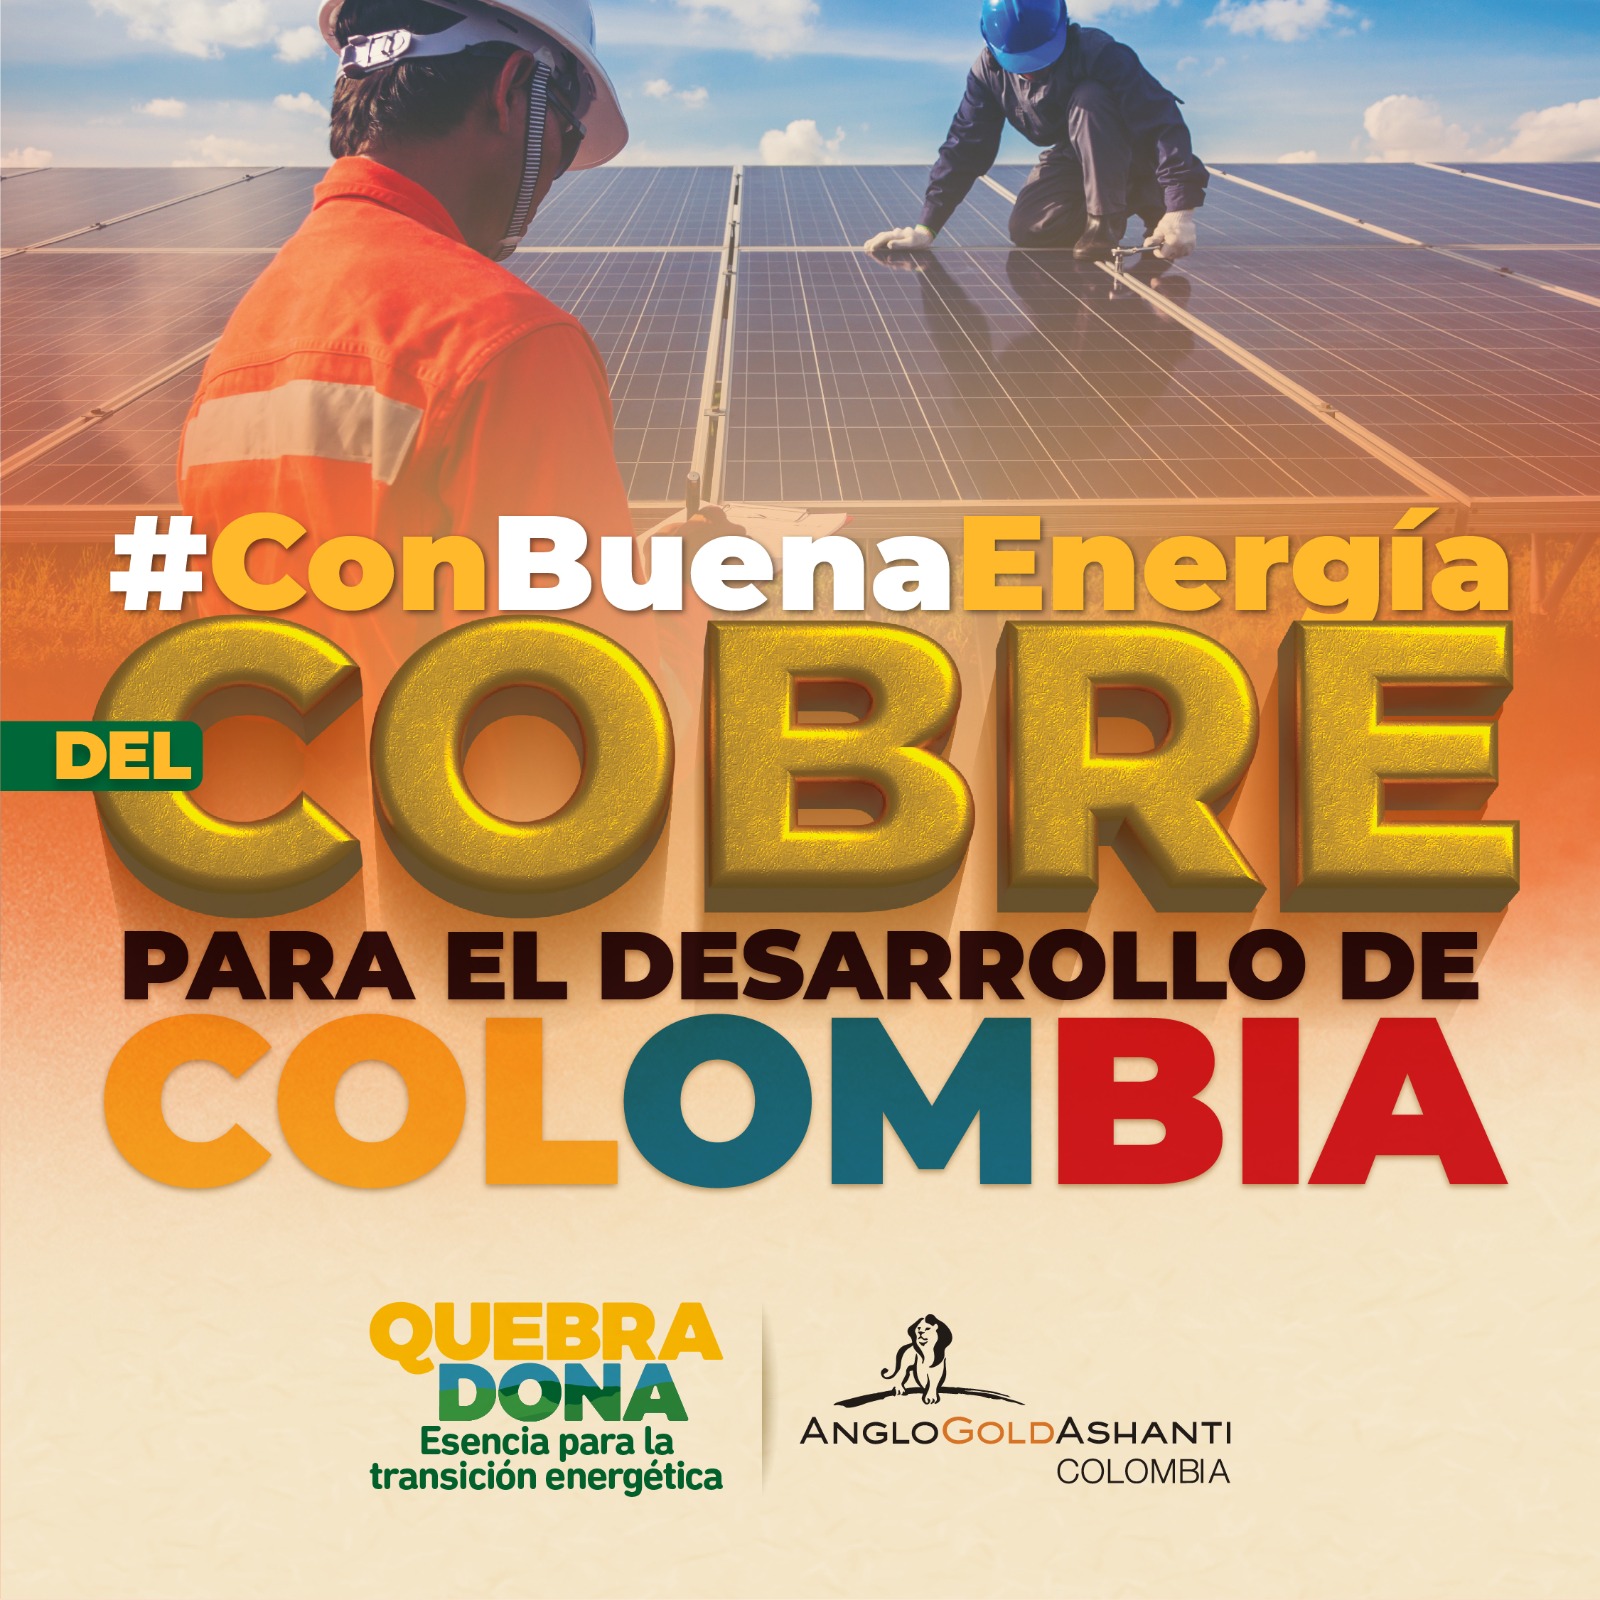 Con buena energía del cobre para el desarrollo de Colombia. Clic acá